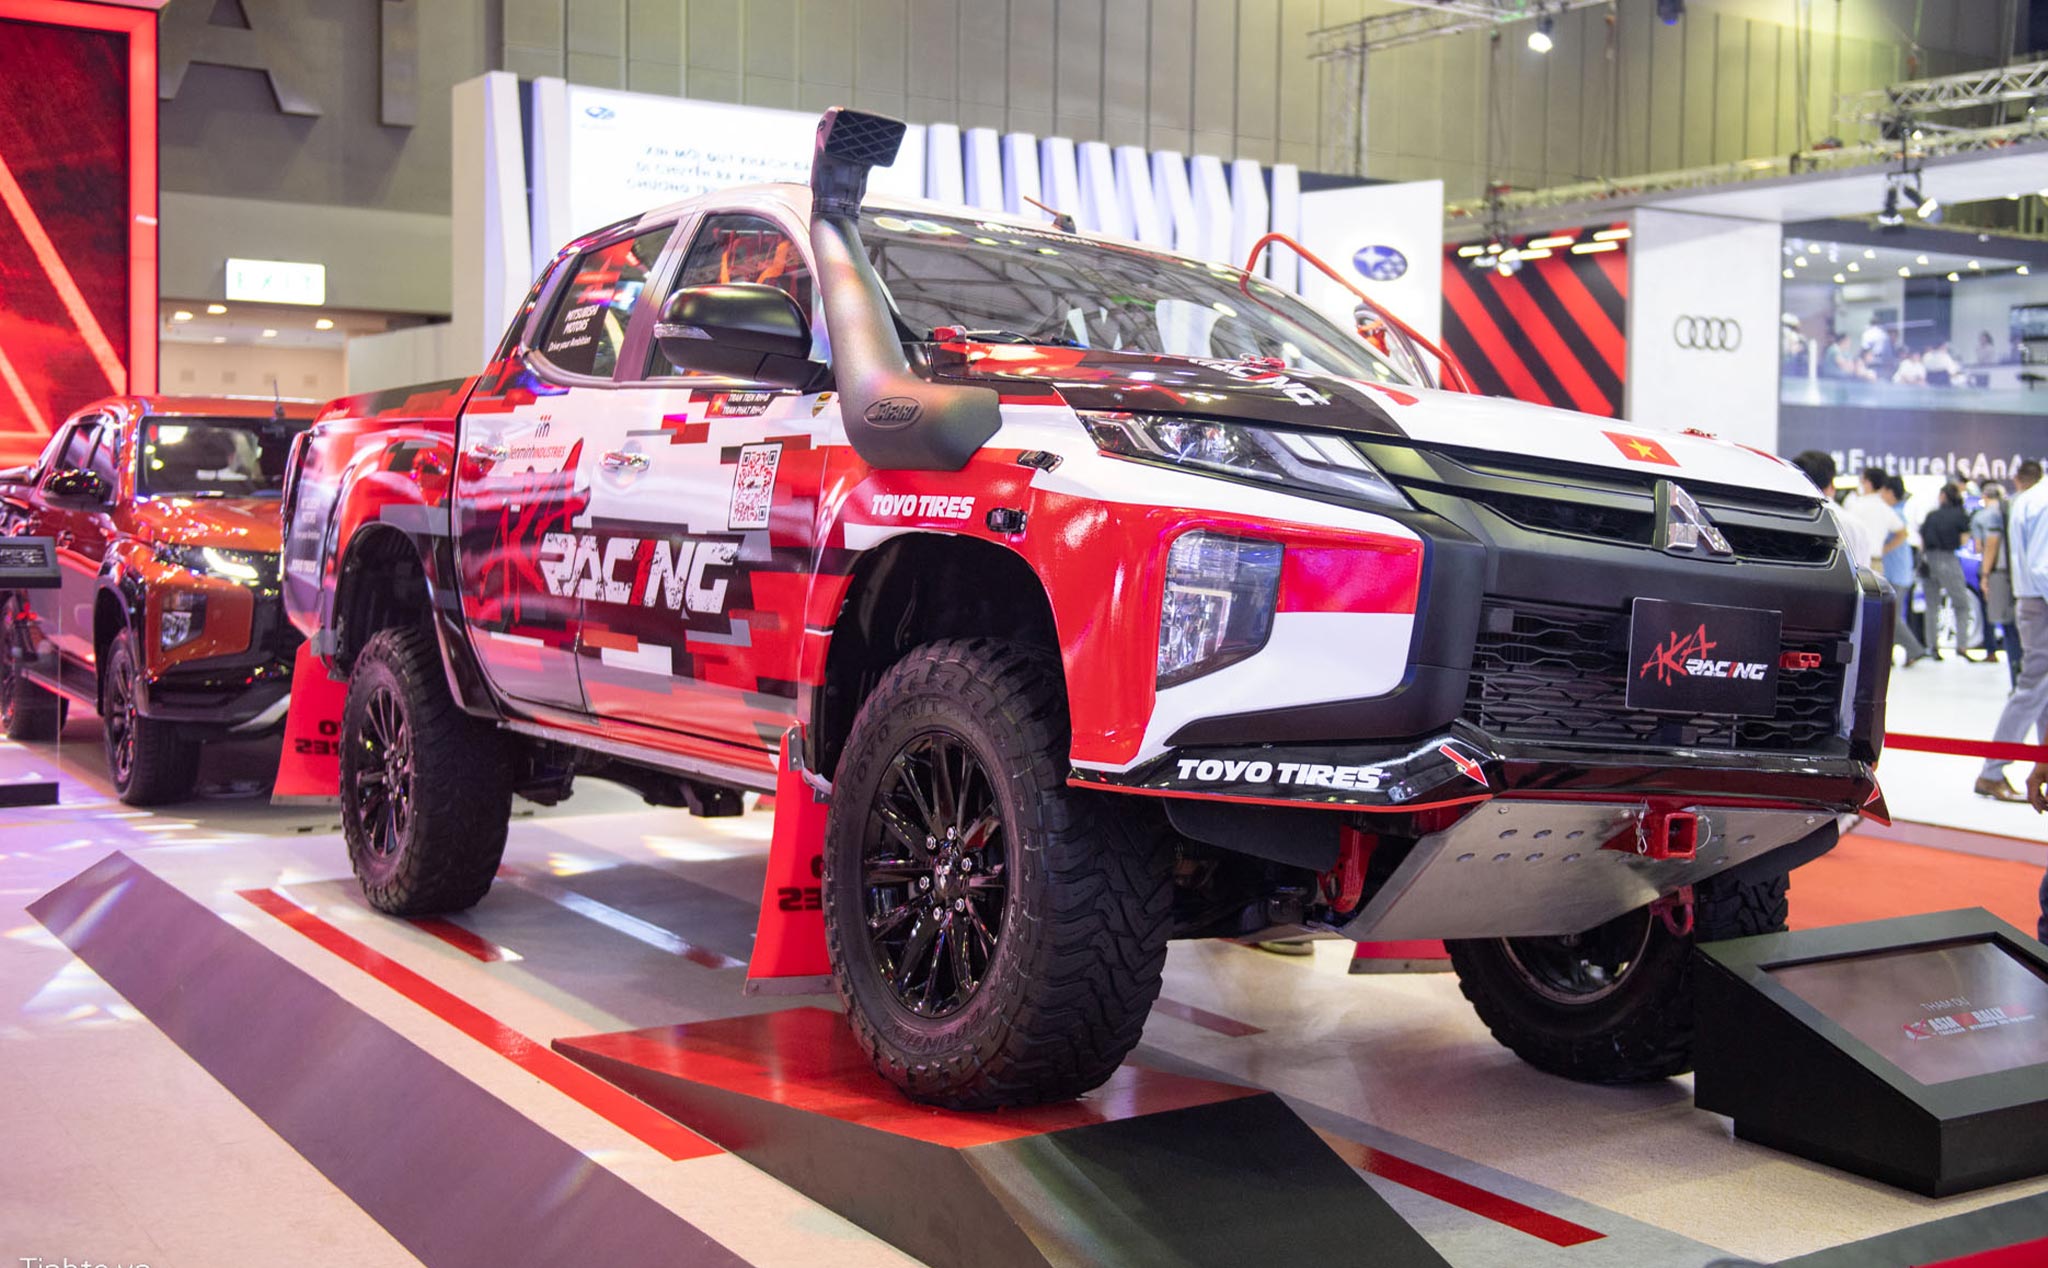 #VMS22: AKA Triton Race Car, xem chiếc xe đua Rally chuyên nghiệp của đội Việt Nam